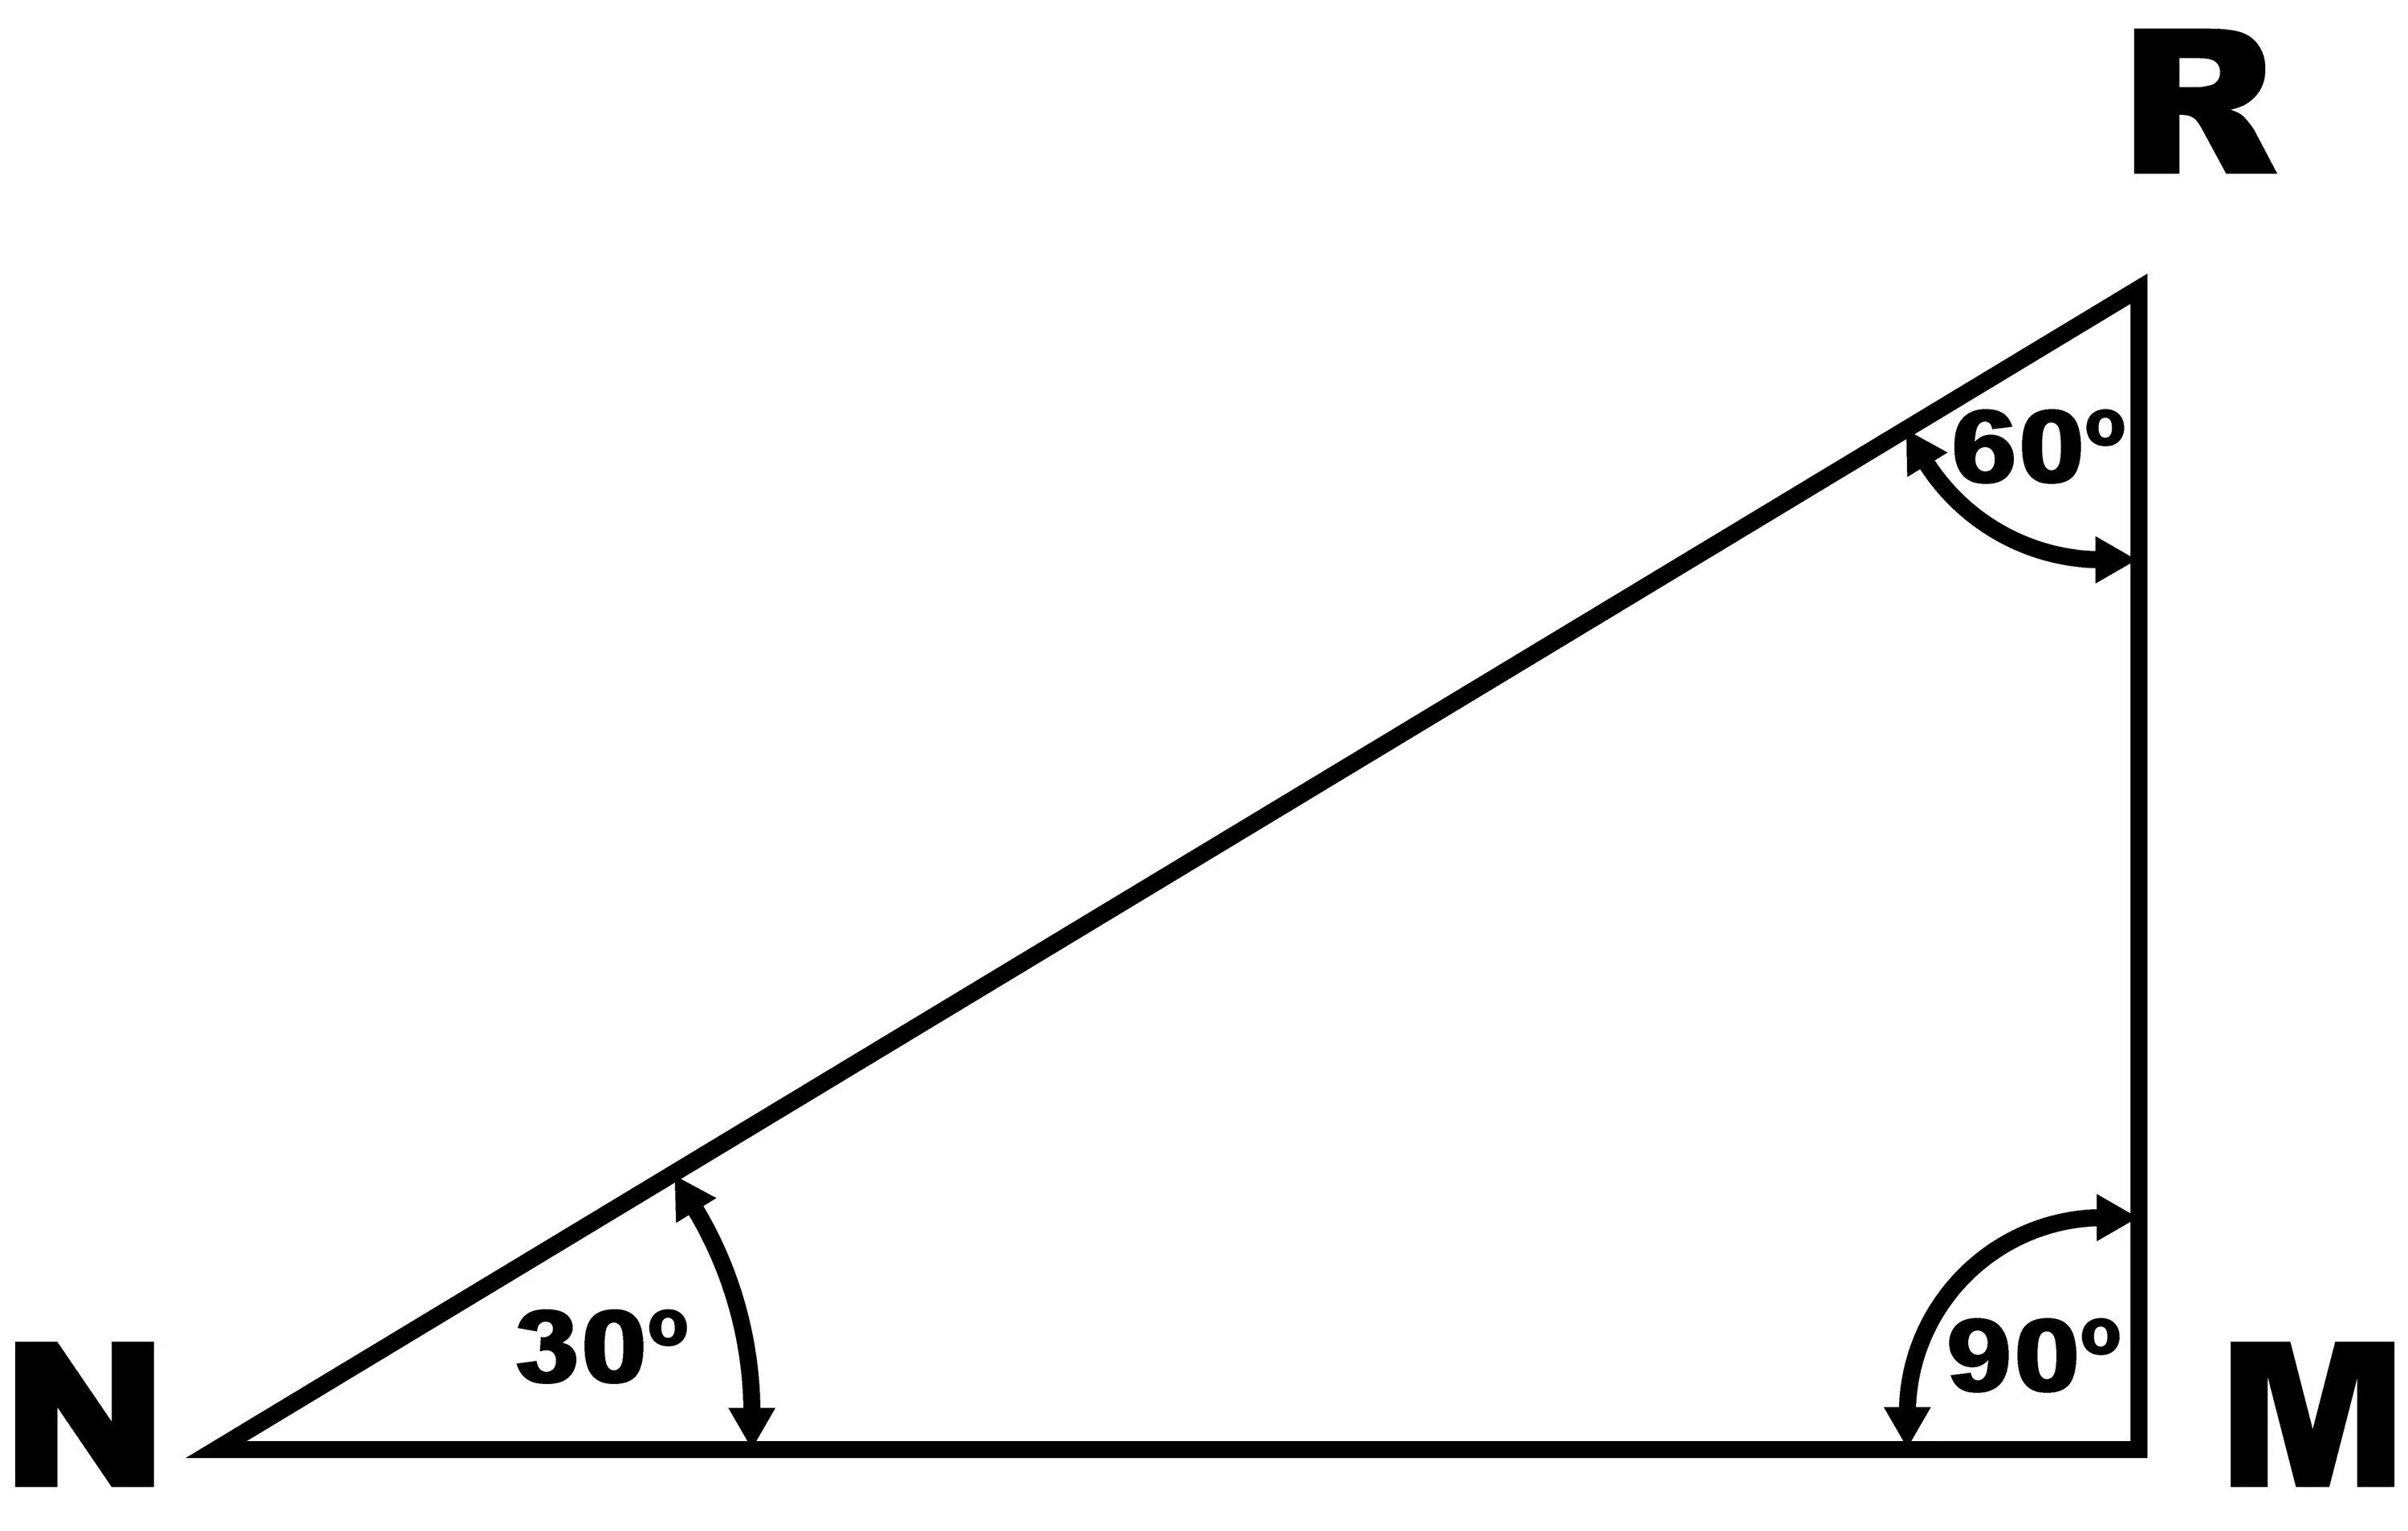 Углы прямоугольного треугольника 90 60 30. 30 60 90 Градусов углы треугольника. Угол 30 градусов в прямоугольном треугольнике. Треугольник 90 60 30 градусов.